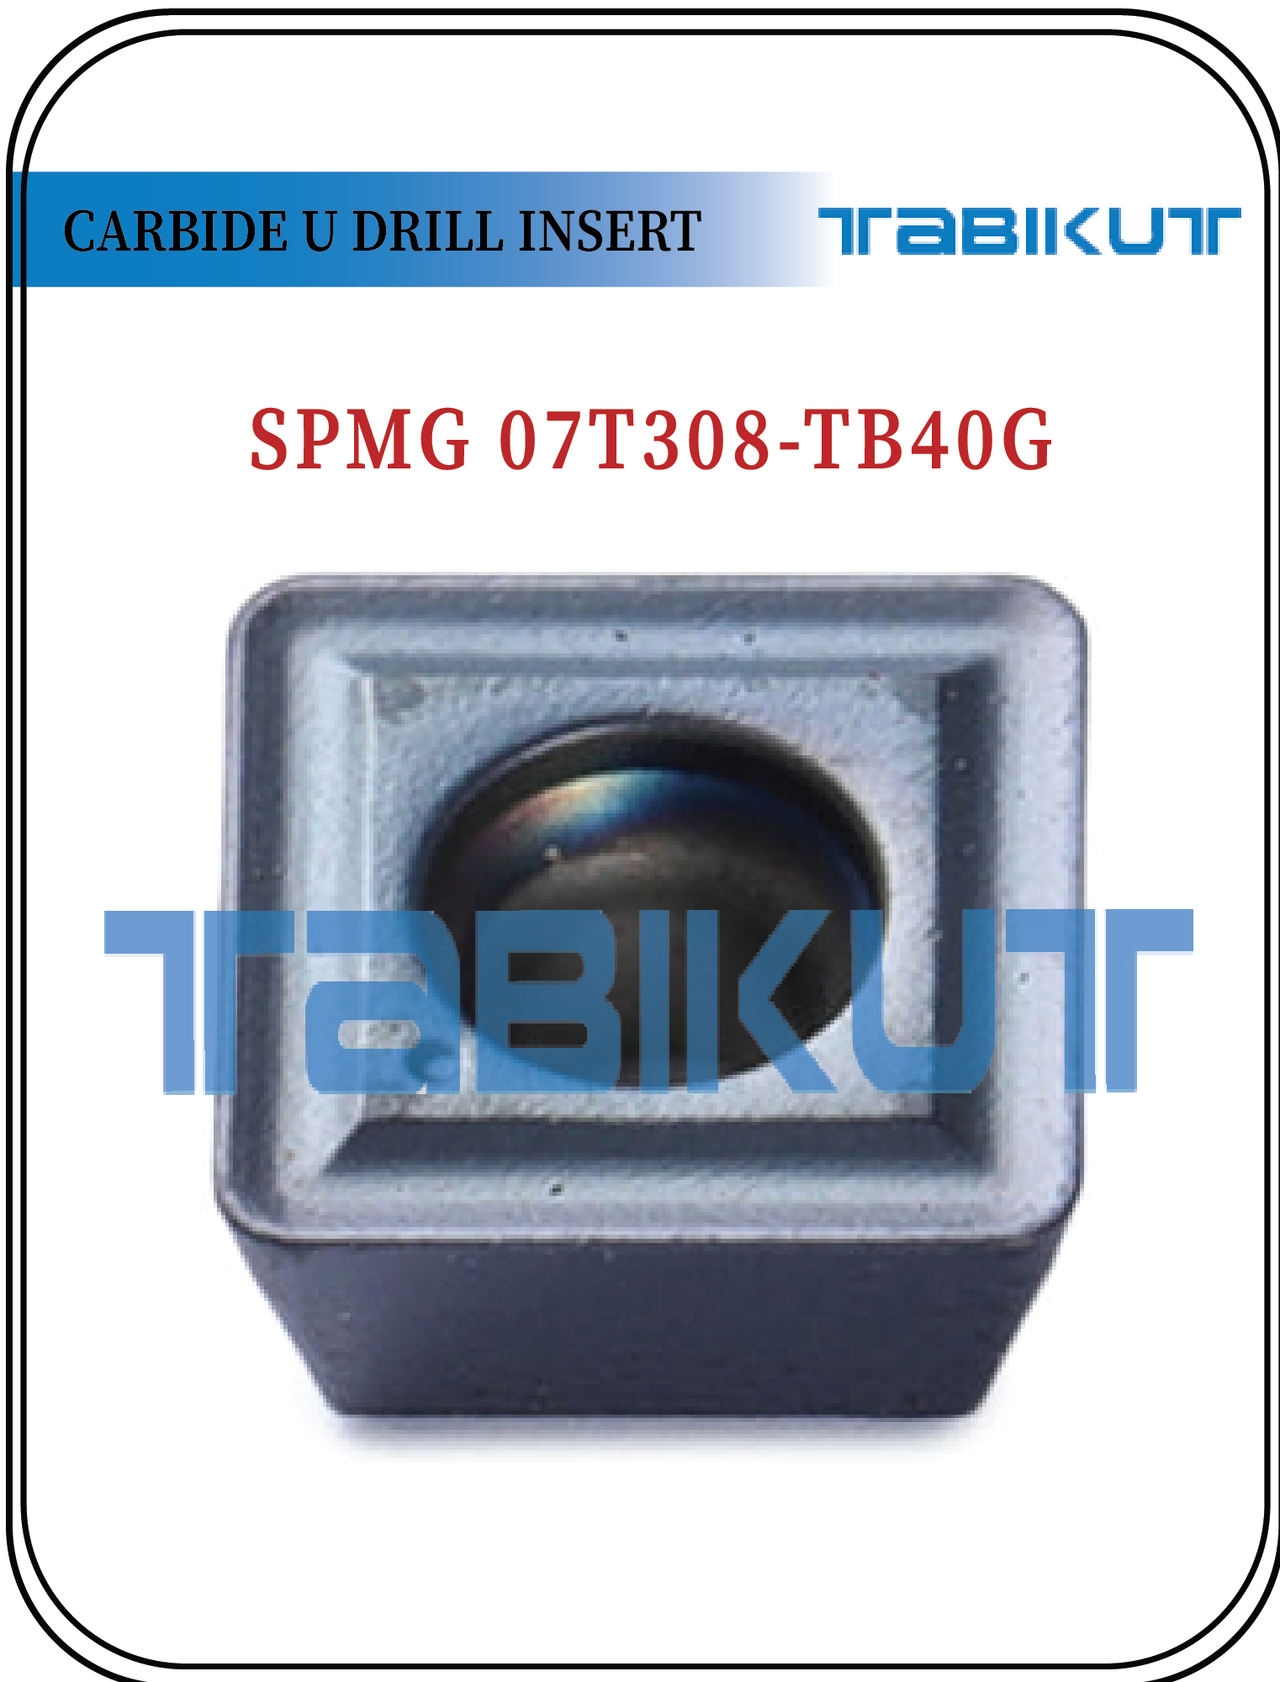 SPMG07T308 TABIKUT Carbide Drilling Insert